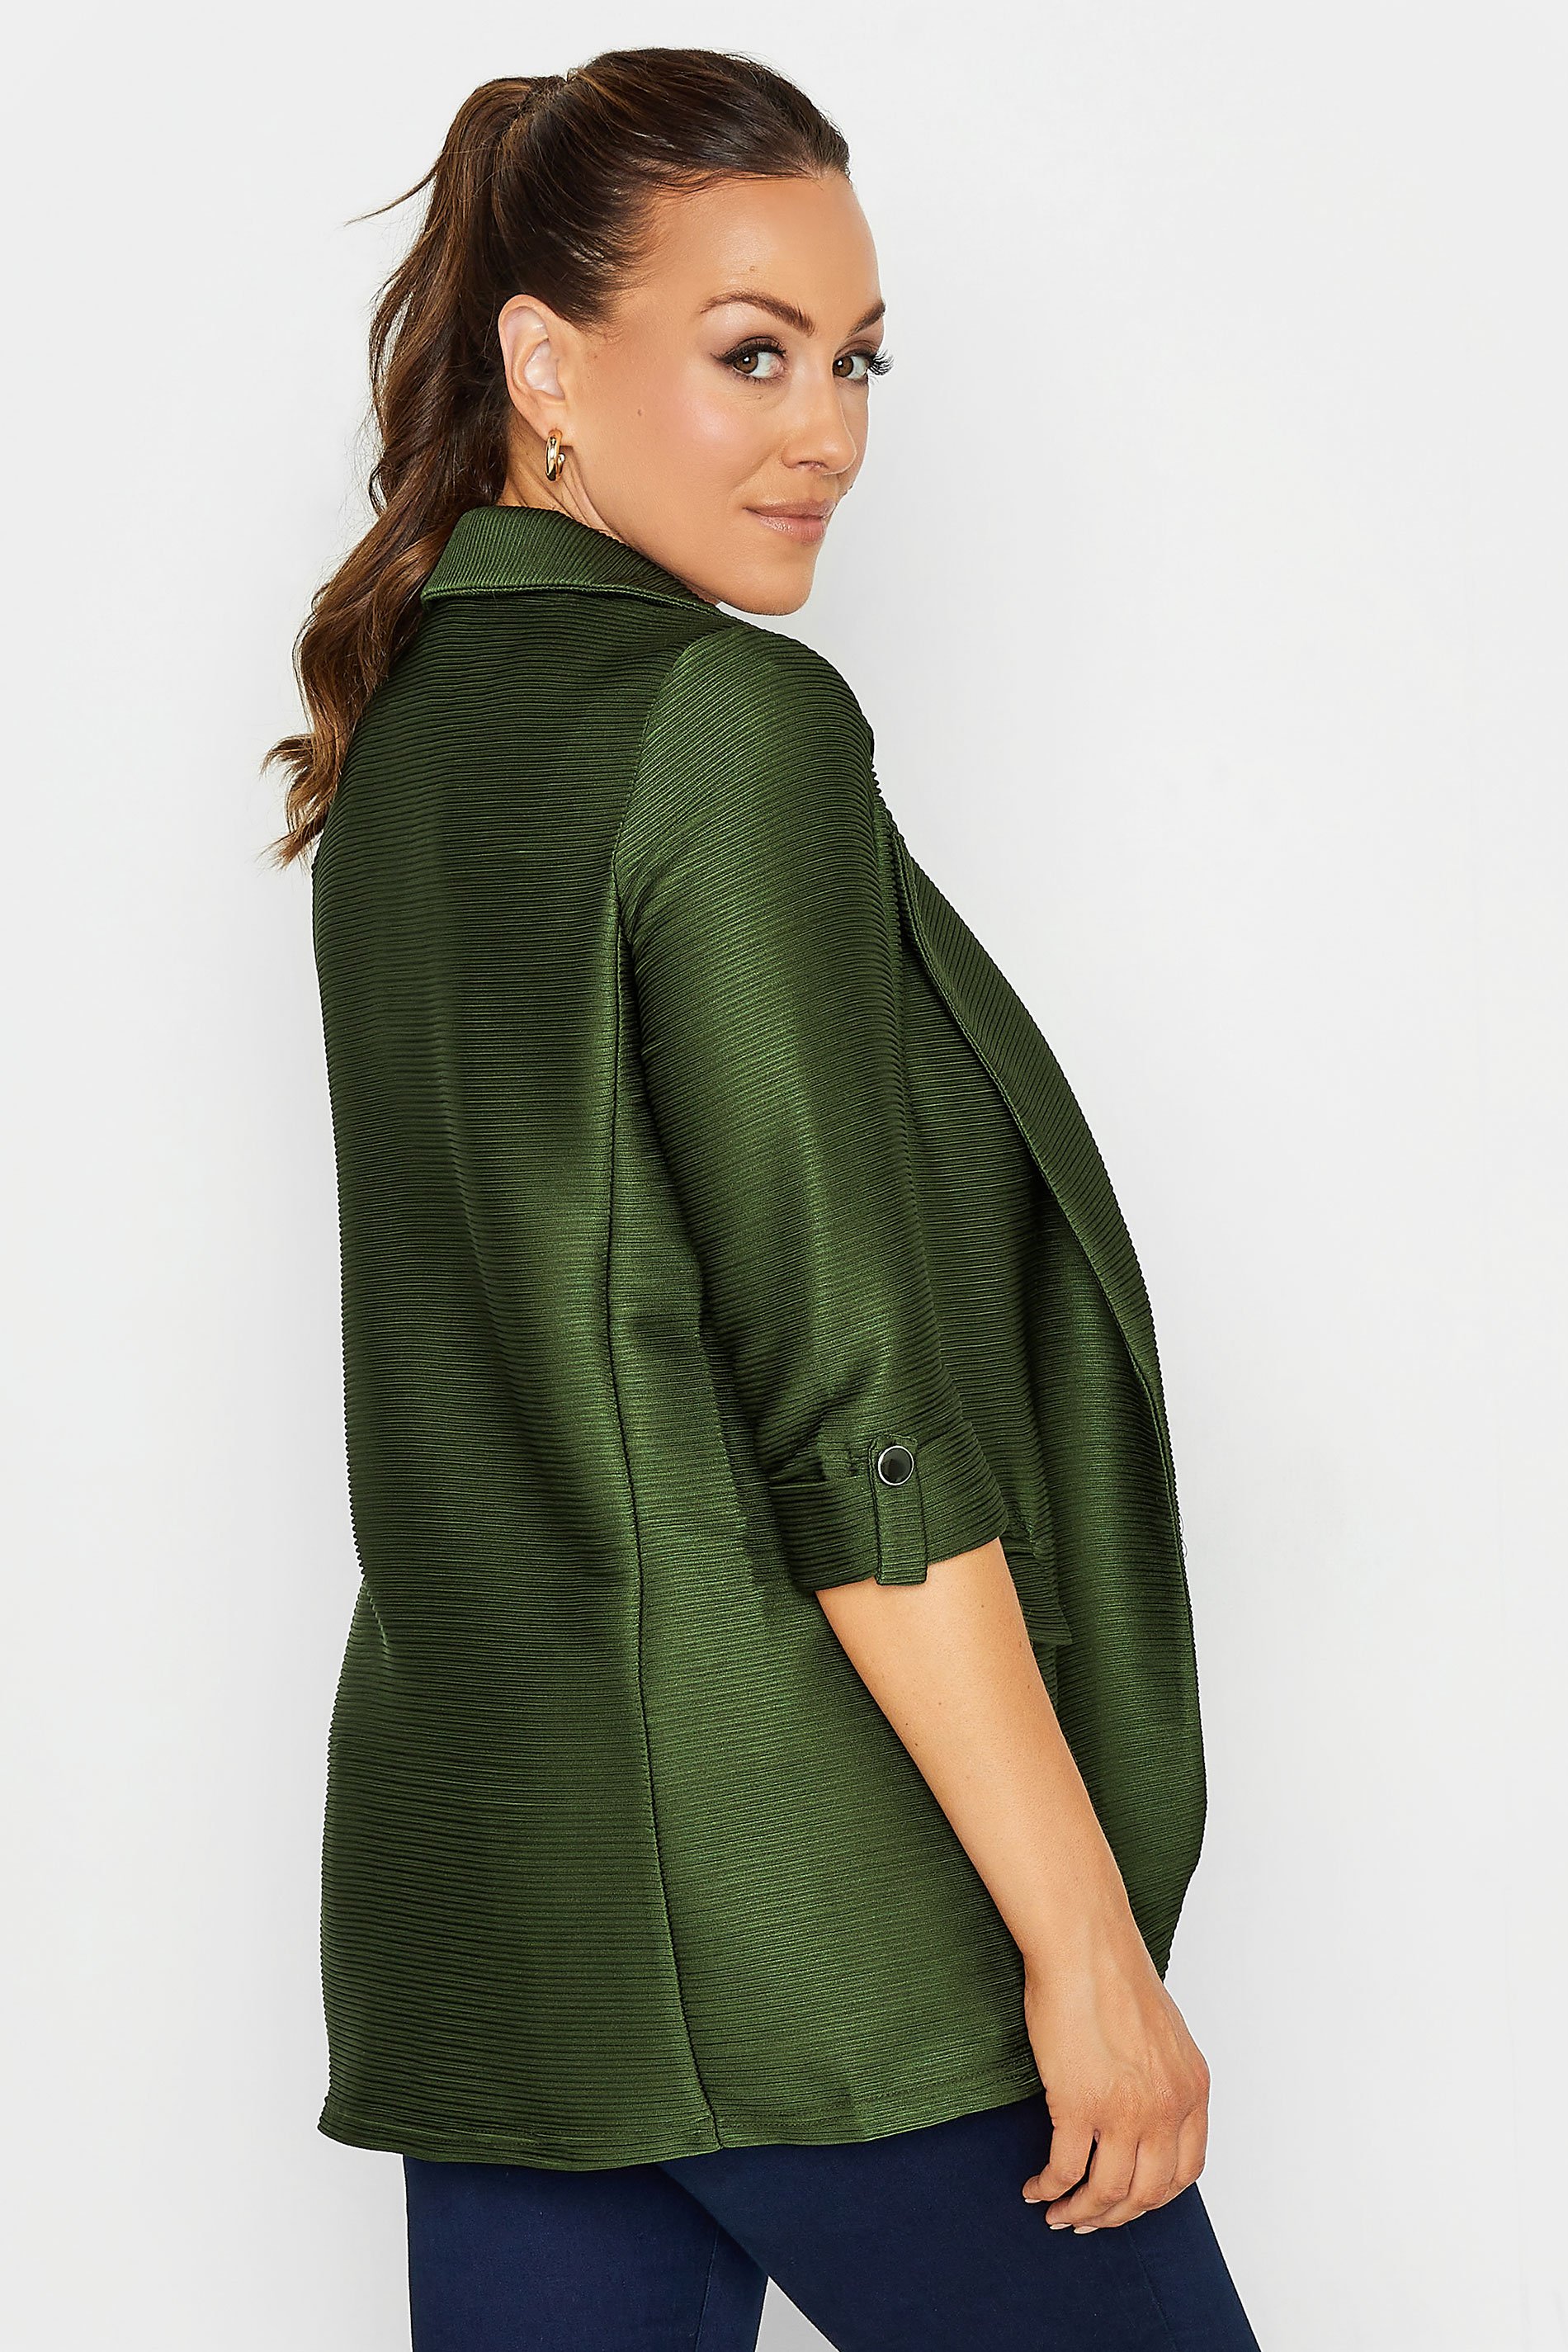 M&Co Khaki Green Textured Blazer | M&Co 3